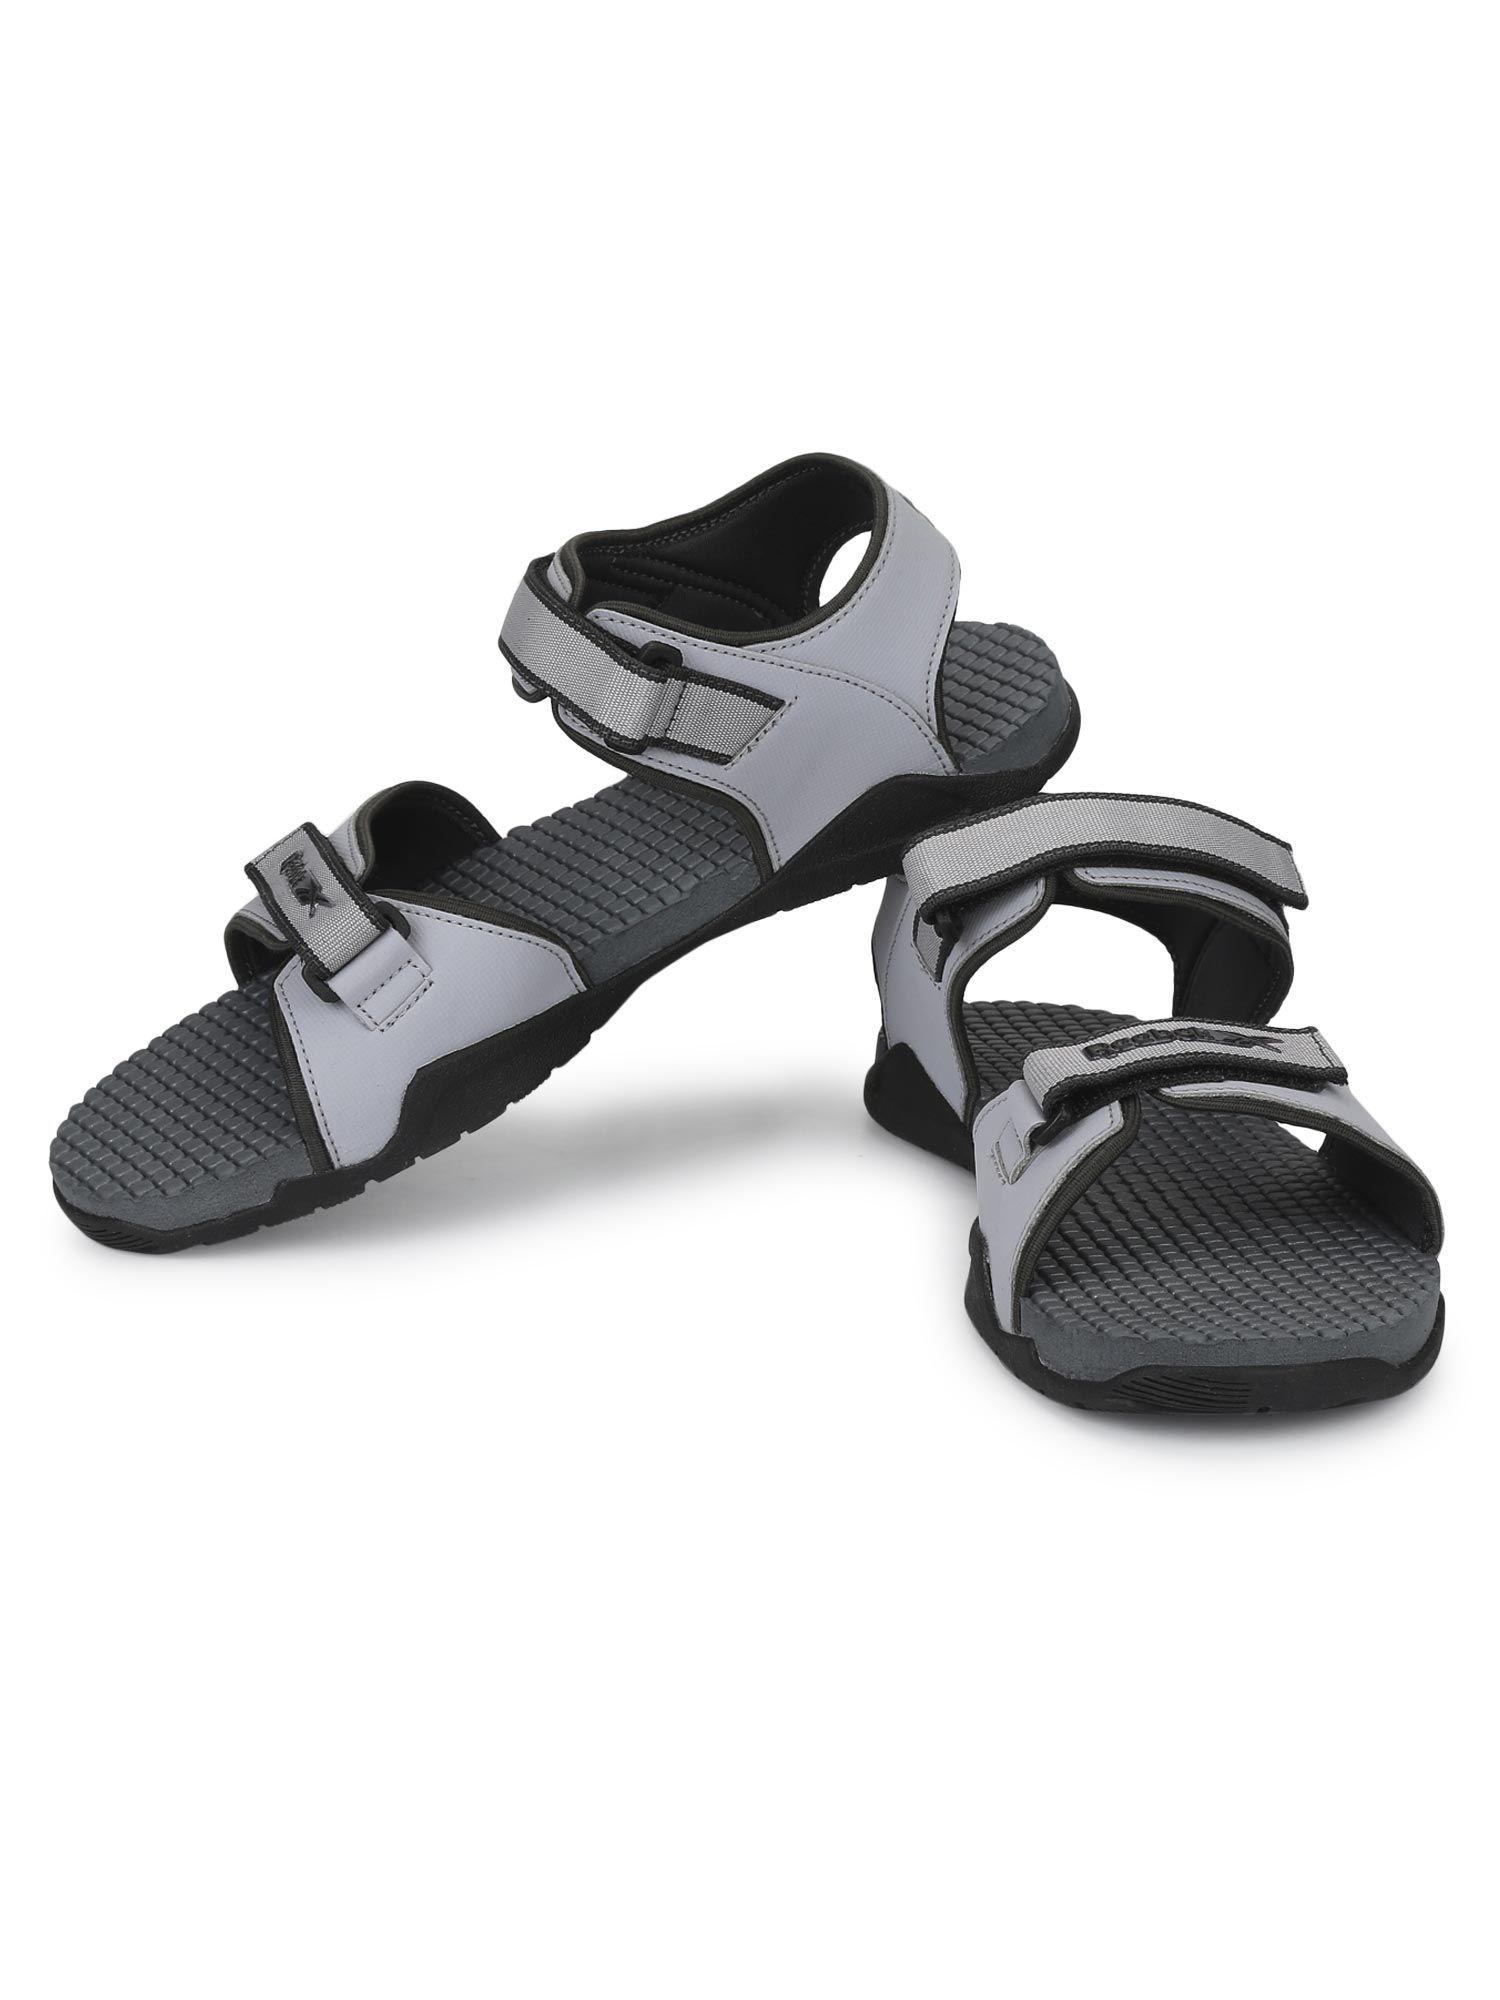 flex-connect-grey-sandals